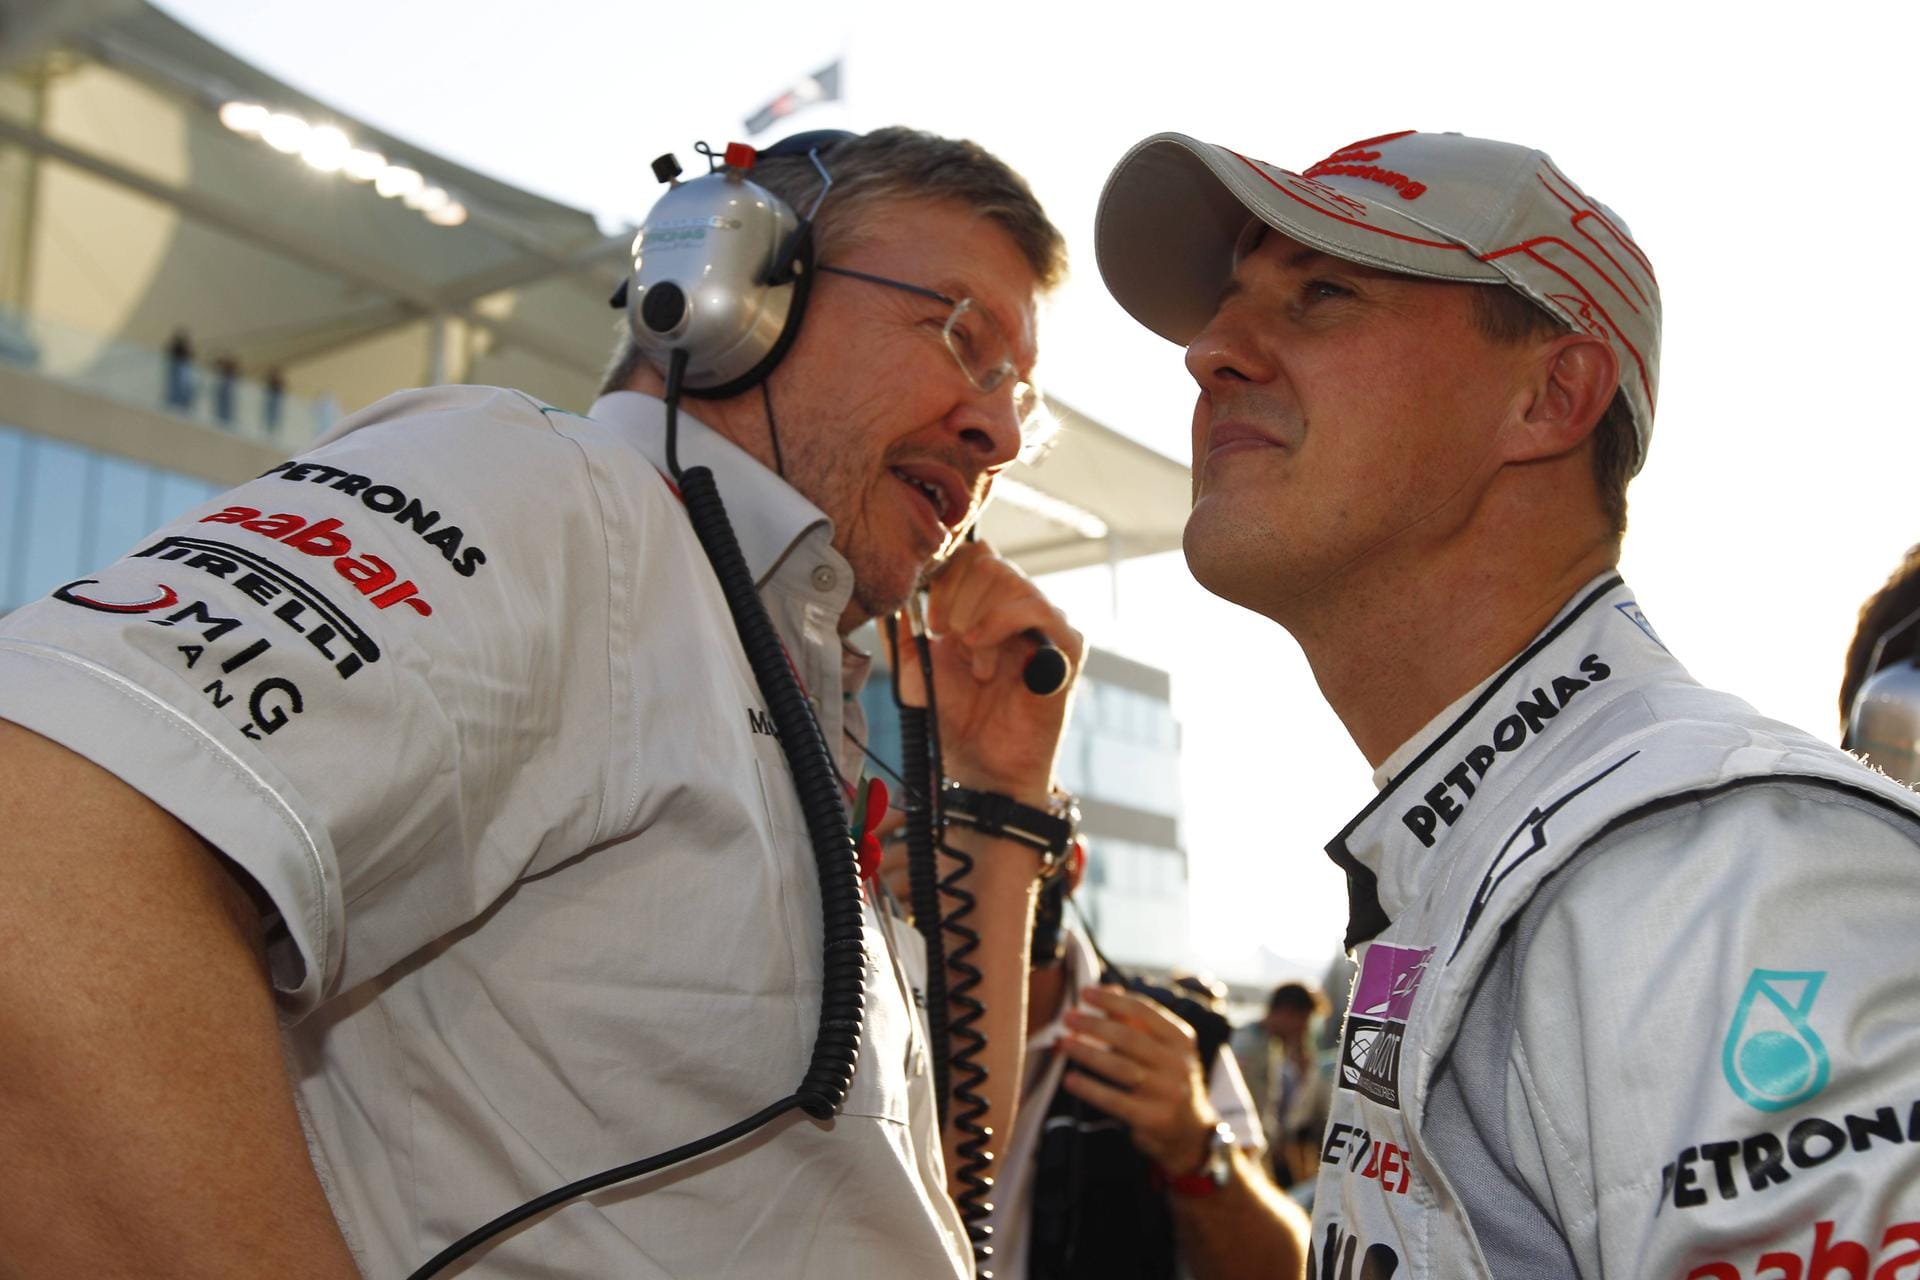 Ross Brawn: Der Ingenieur begleitete Michael Schumacher viele Jahre. Er kam auf Wunsch des siebenfachen Weltmeisters von Benetton zur Scuderia Ferrari, wurde dort 1997 Technischer Direktor. Auch später begleitete er Schumi bei Mercedes, wie hier im Jahr 2011. Seit 2017 ist Brawn Sportdirektor der Formel 1.